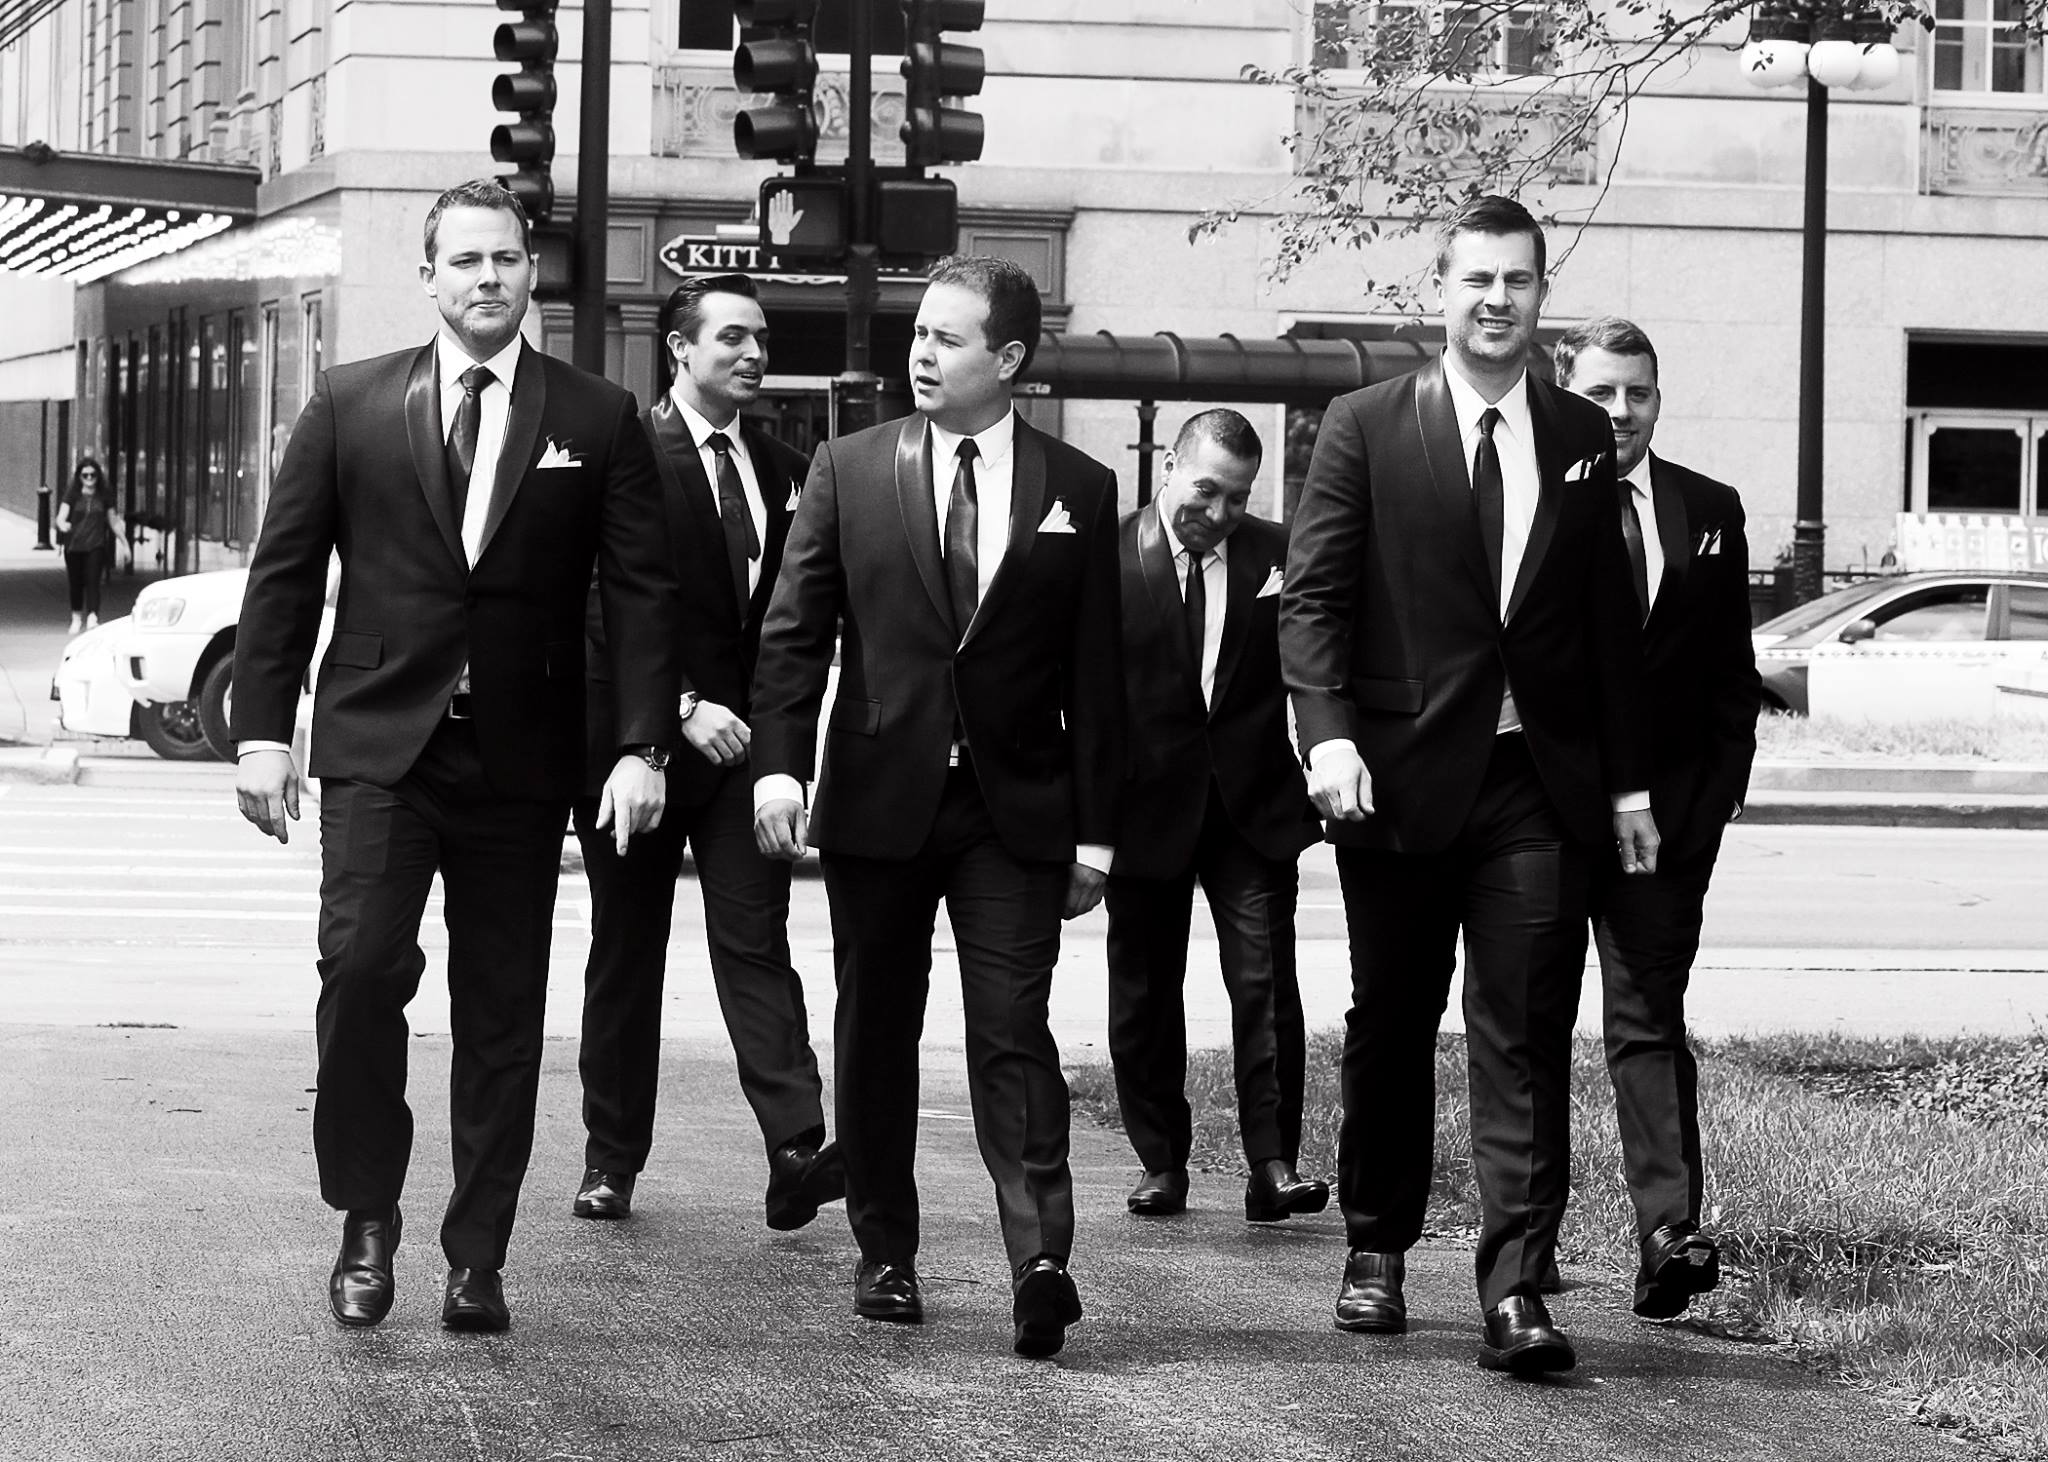 Bespoke Tuxedos Create Wedding Style to Remember